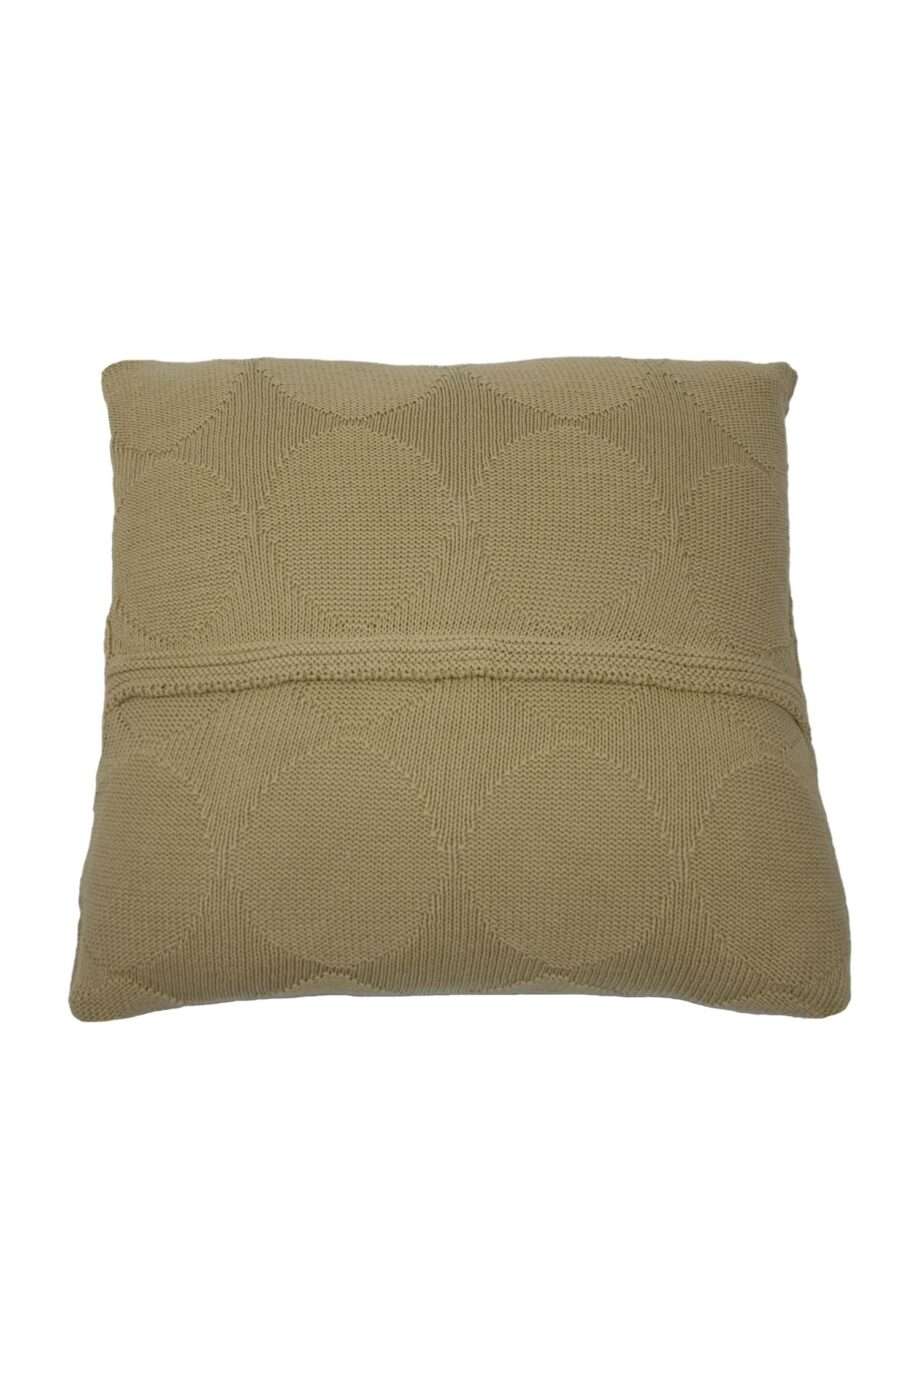 spots ochre knitted cotton pillowcase xsmall